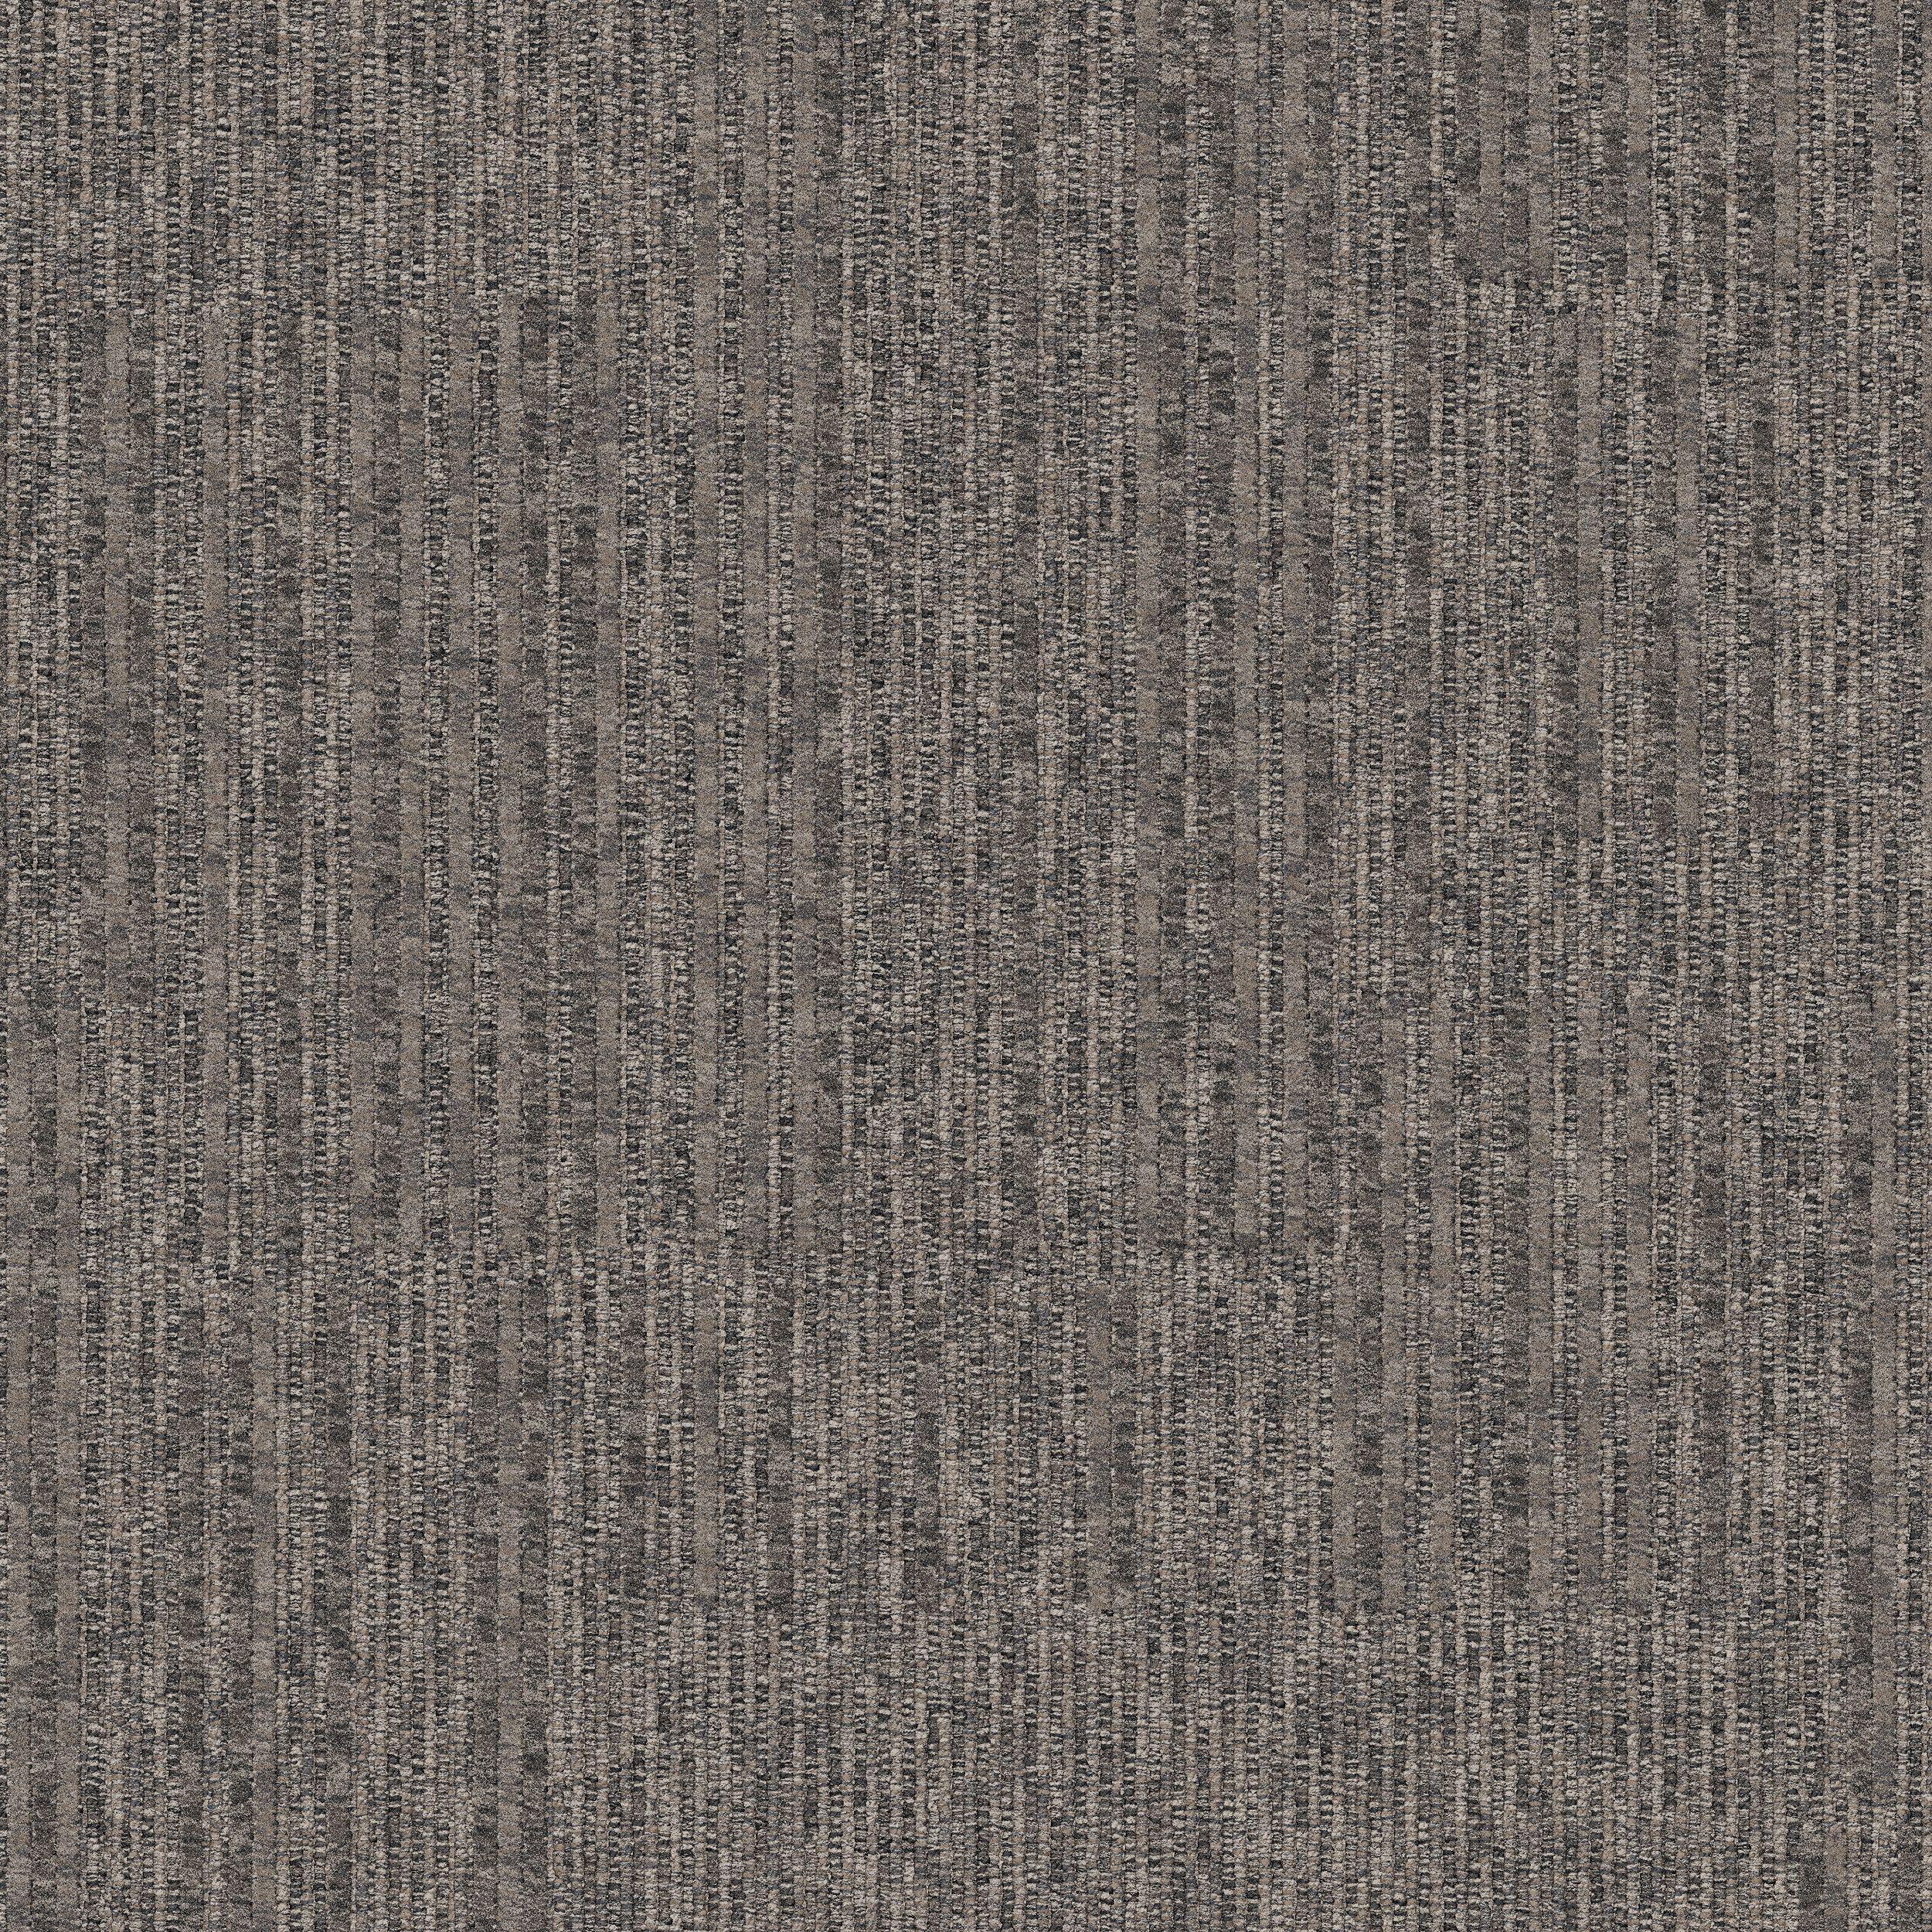 Equilibrium Carpet Tile In Persistence número de imagen 3